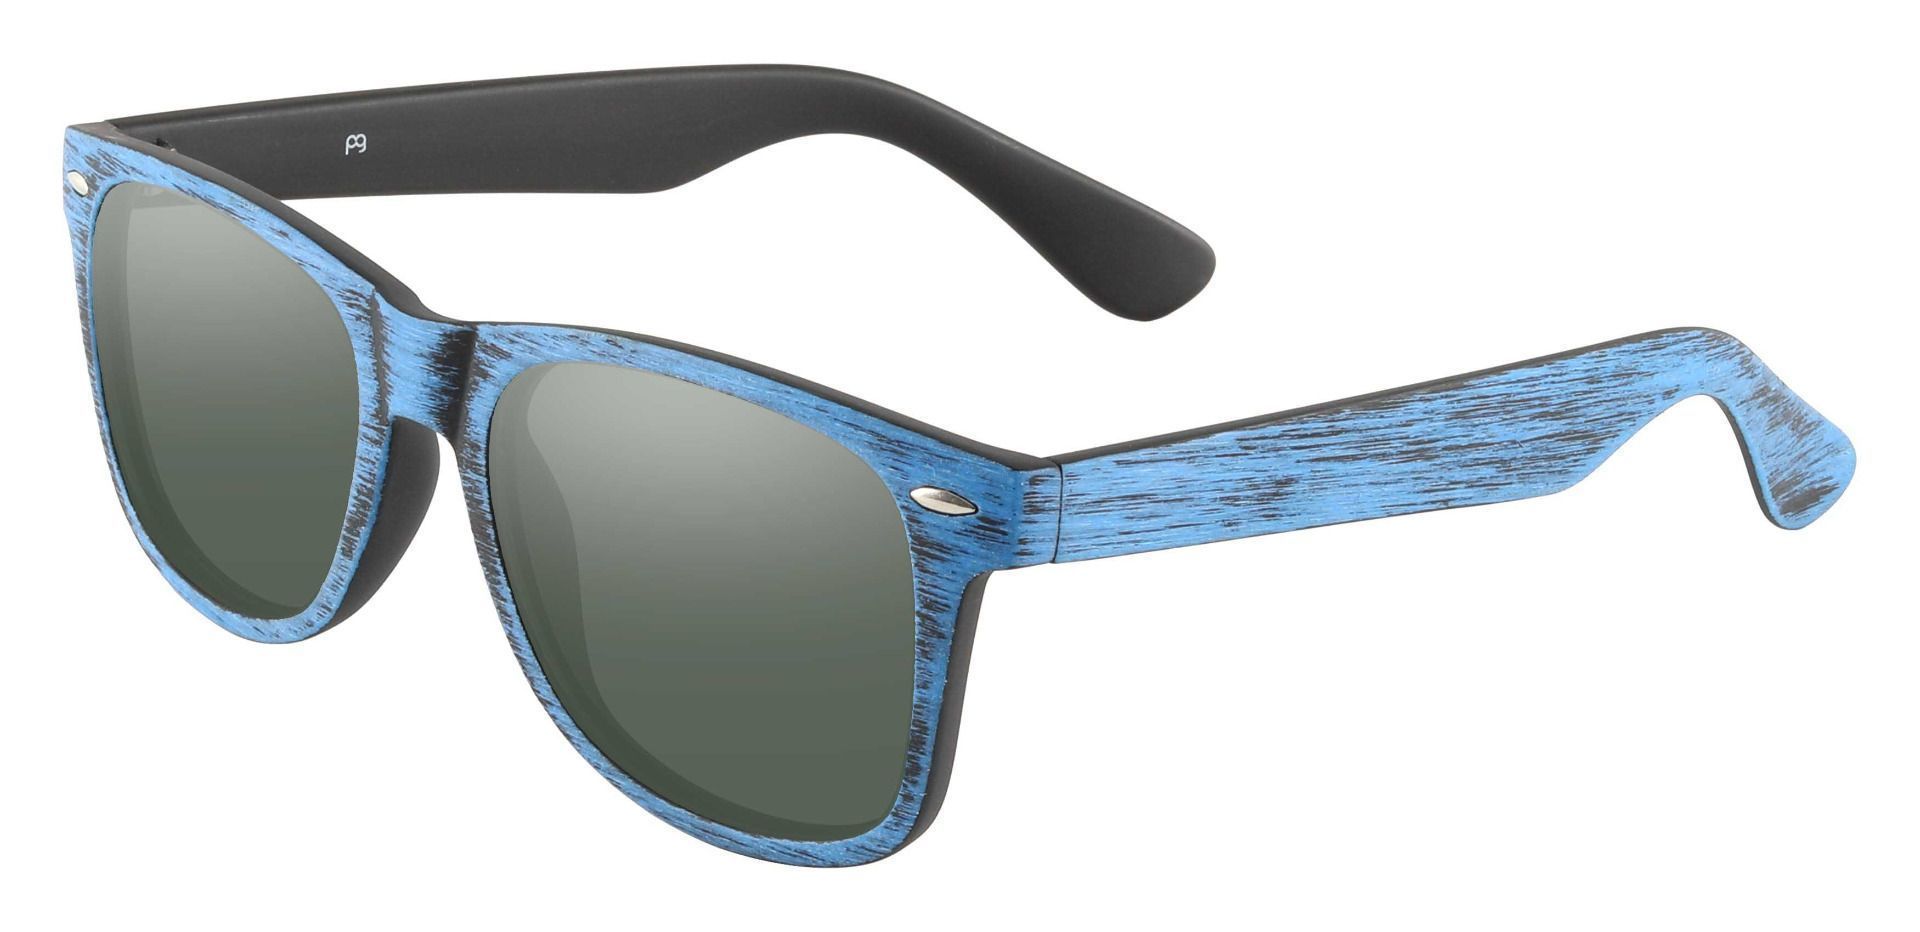 Paterson Square Prescription Sunglasses - Blue Frame With Green Lenses